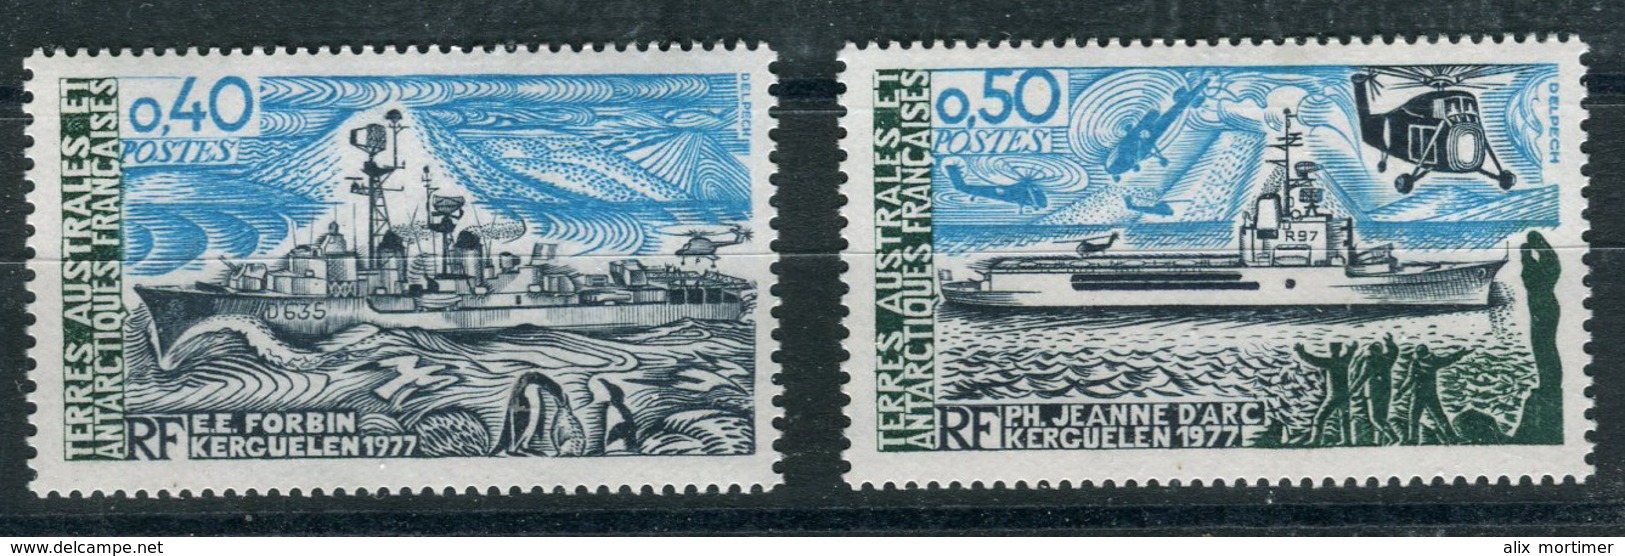 TAAF 1978 - N° 74 & 75 - Bateaux -Neuf ** - Unused Stamps